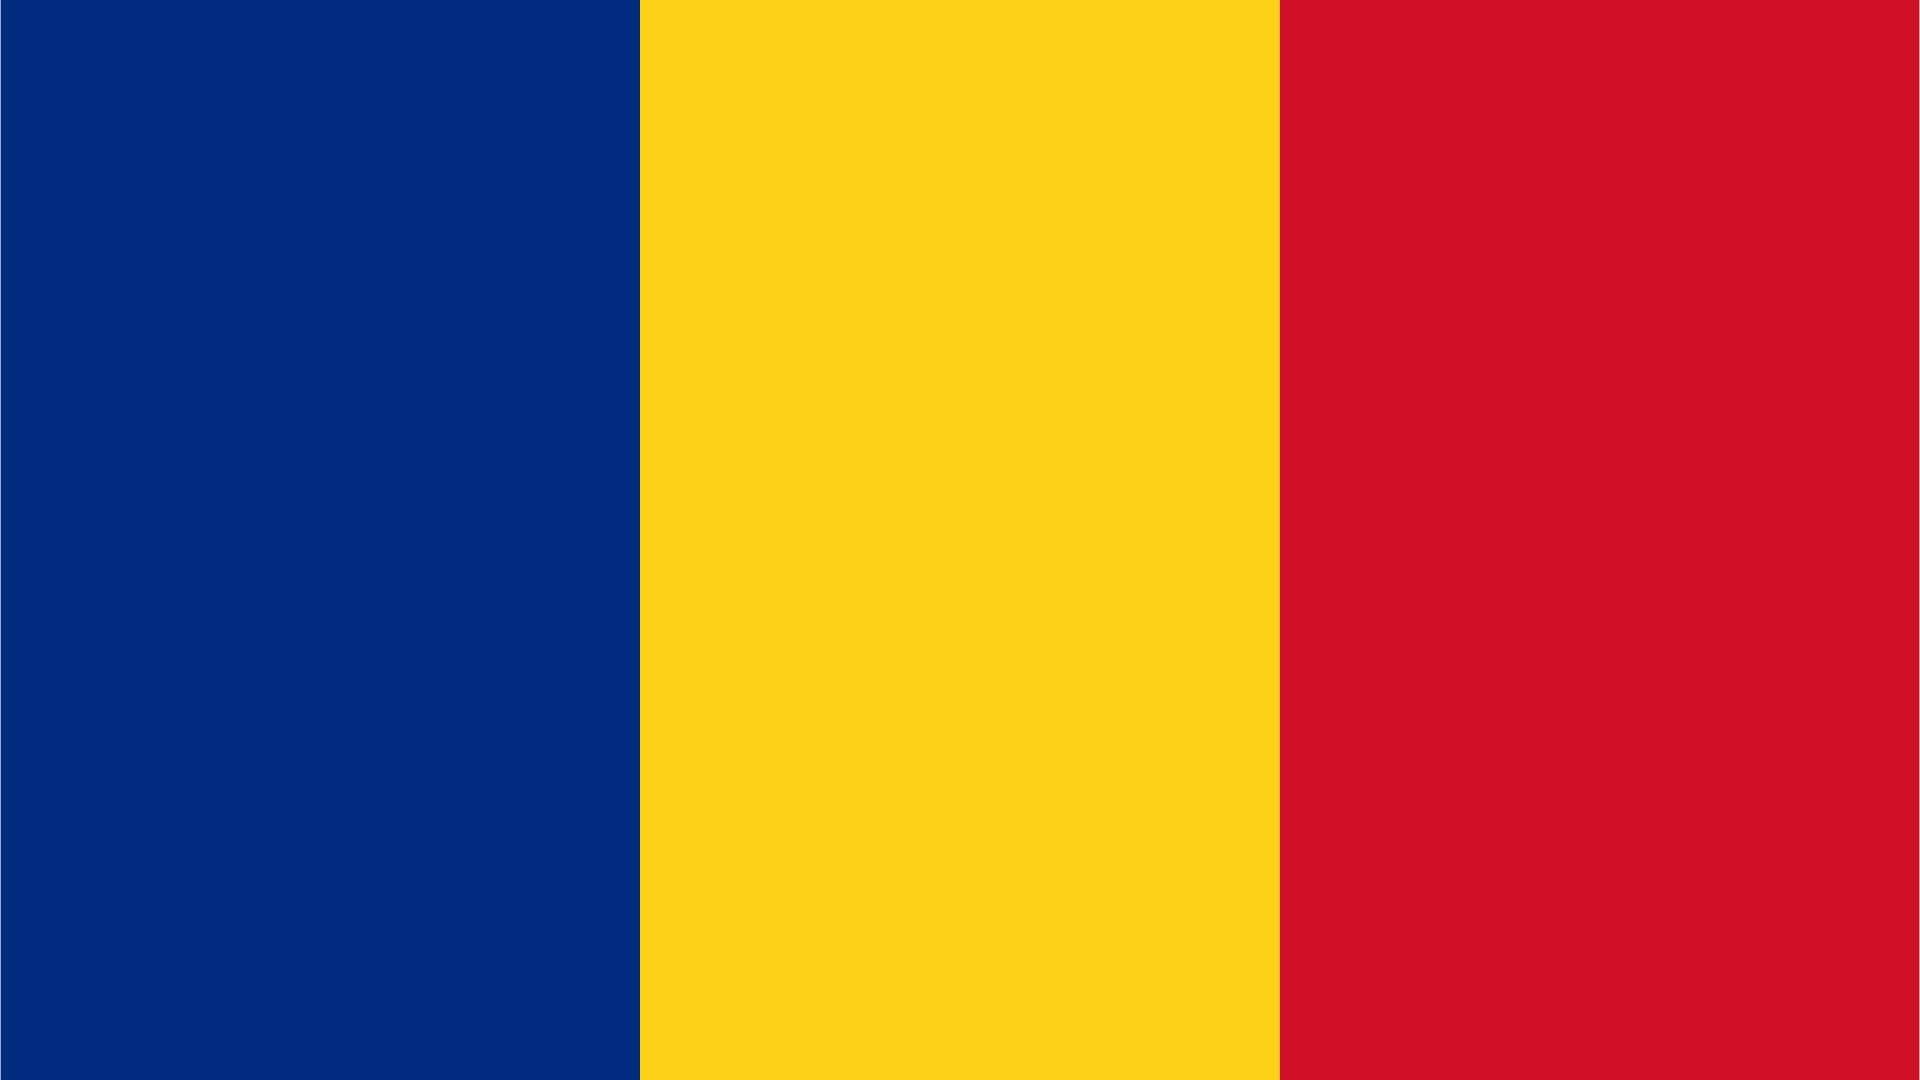  Painéis online e móvel na Roménia